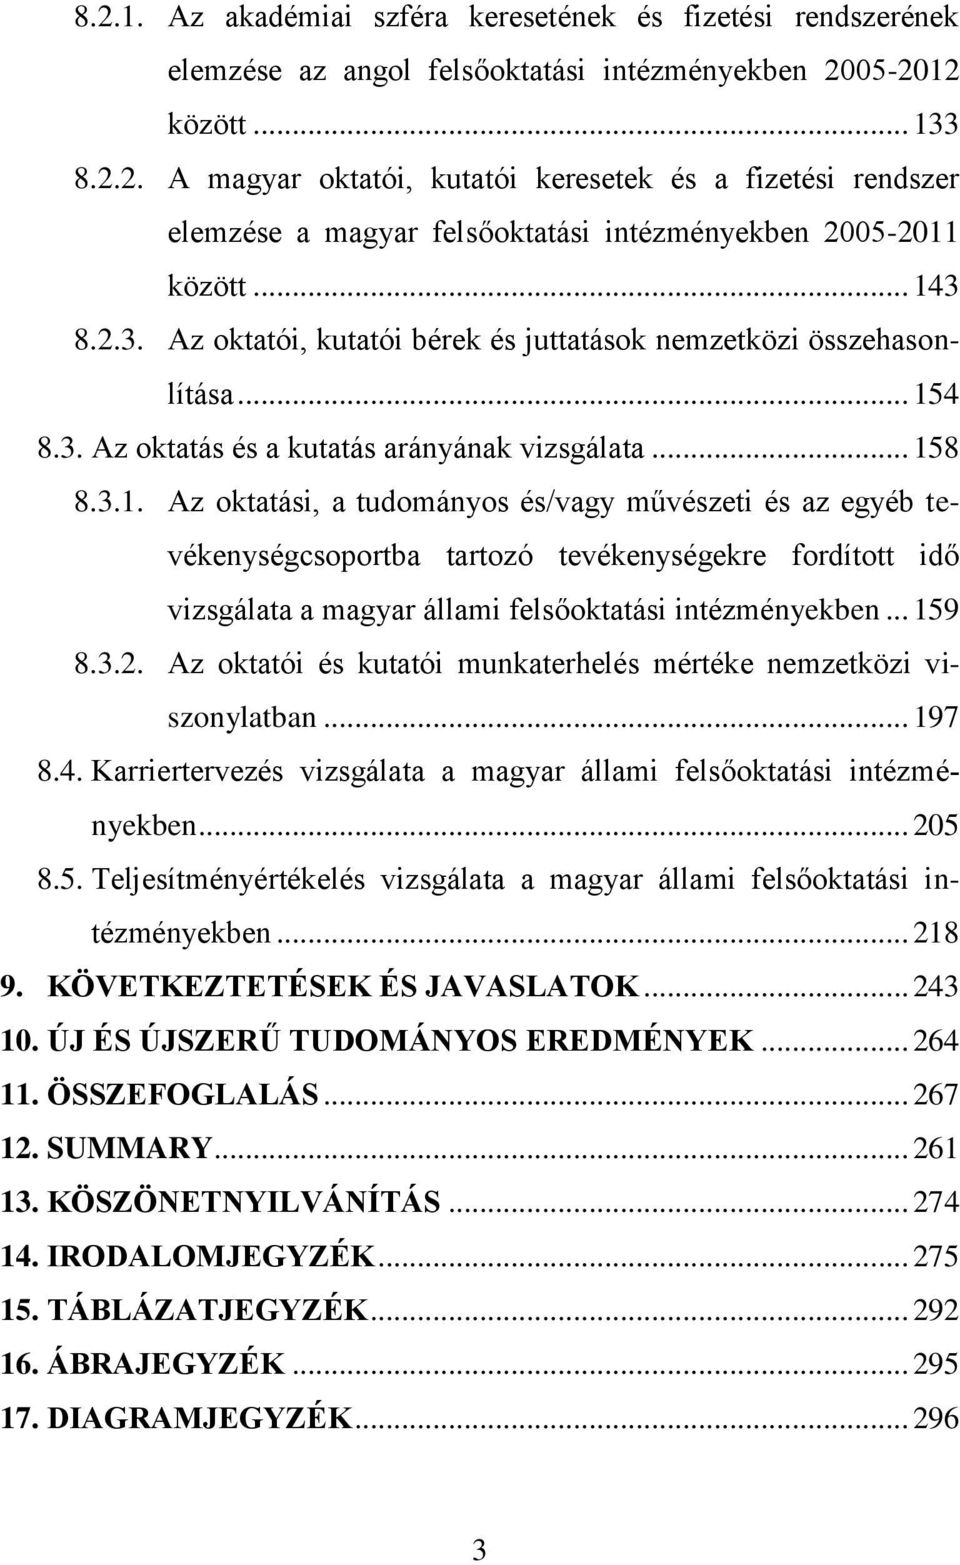 .. 159 8.3.2. Az oktatói és kutatói munkaterhelés mértéke nemzetközi viszonylatban... 197 8.4. Karriertervezés vizsgálata a magyar állami felsőoktatási intézményekben... 205 8.5. Teljesítményértékelés vizsgálata a magyar állami felsőoktatási intézményekben.